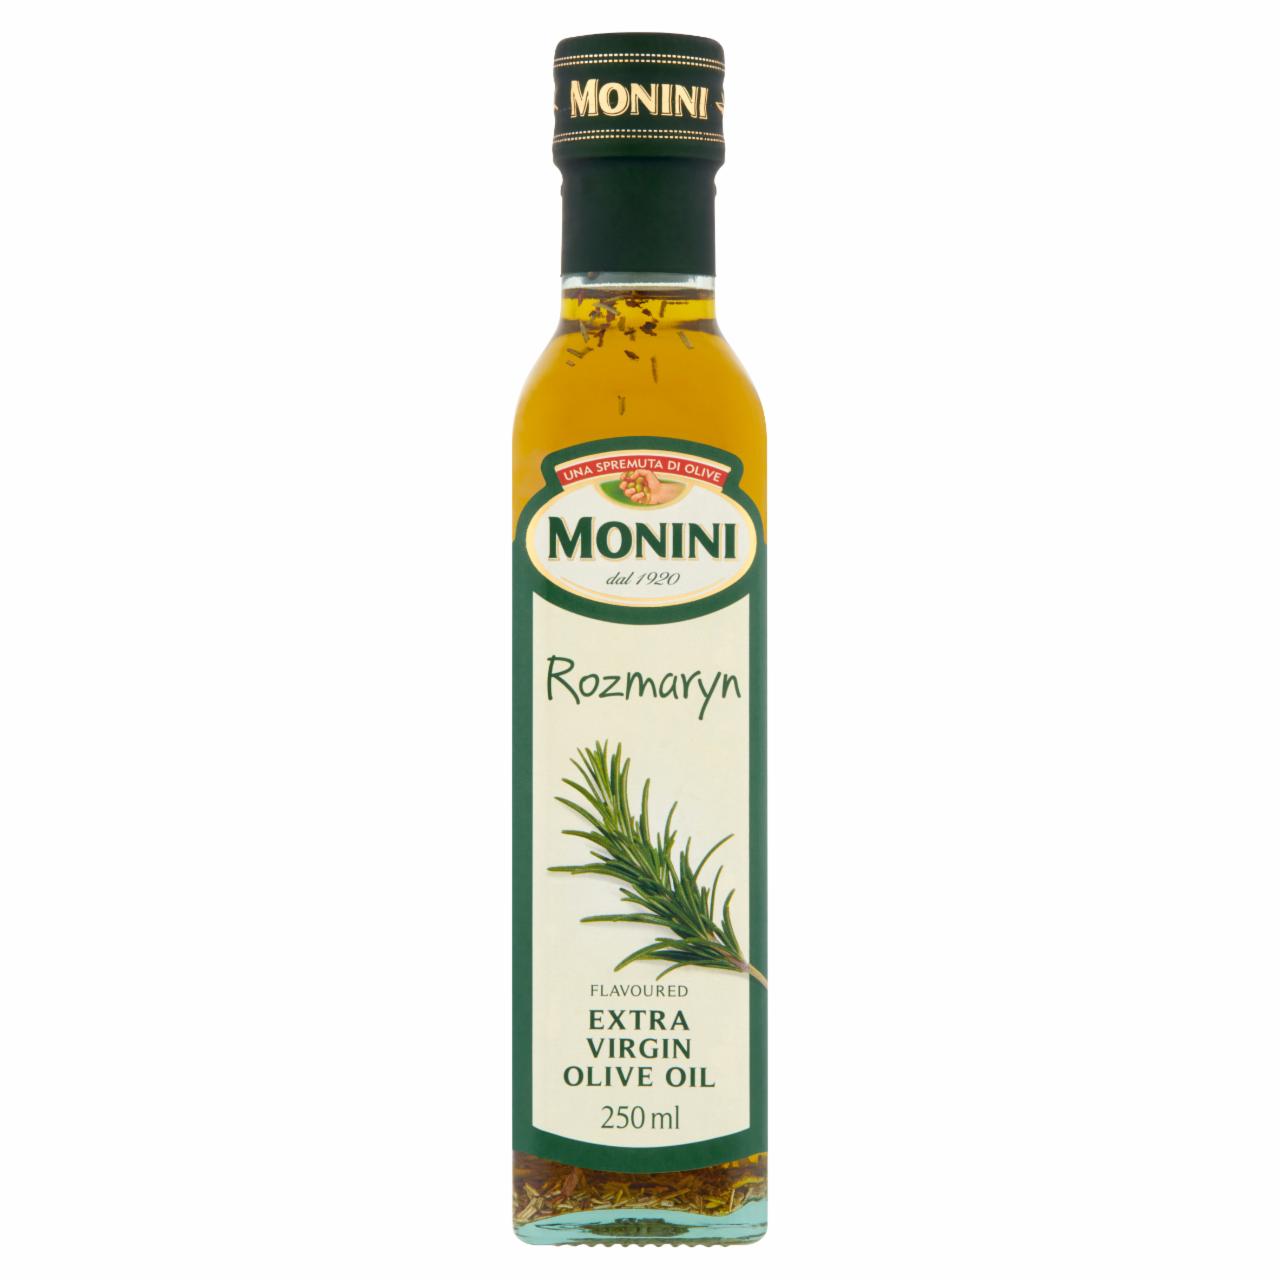 Zdjęcia - Monini Aromatyzowana oliwa z oliwek o smaku rozmarynu 250 ml